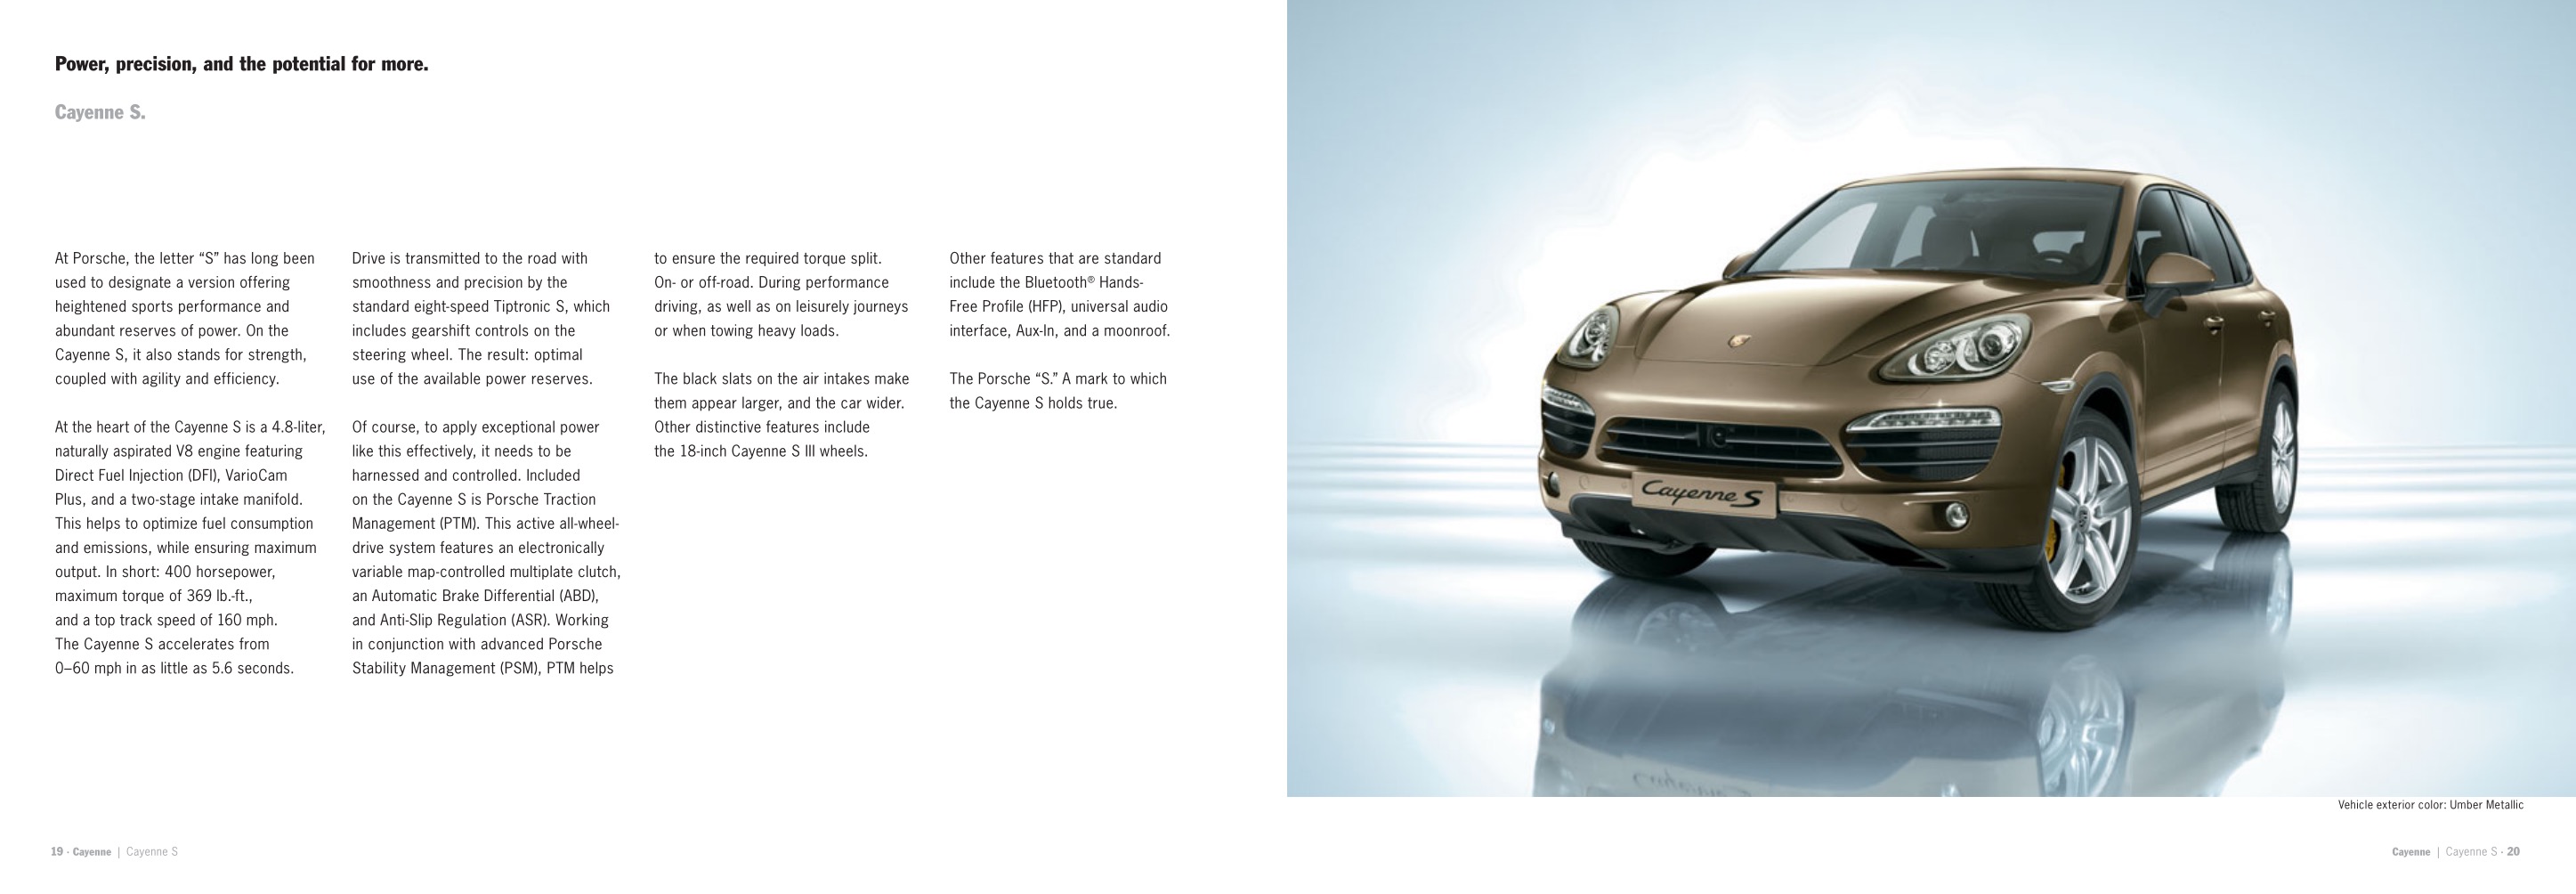 2013 Porsche Cayenne Brochure Page 17